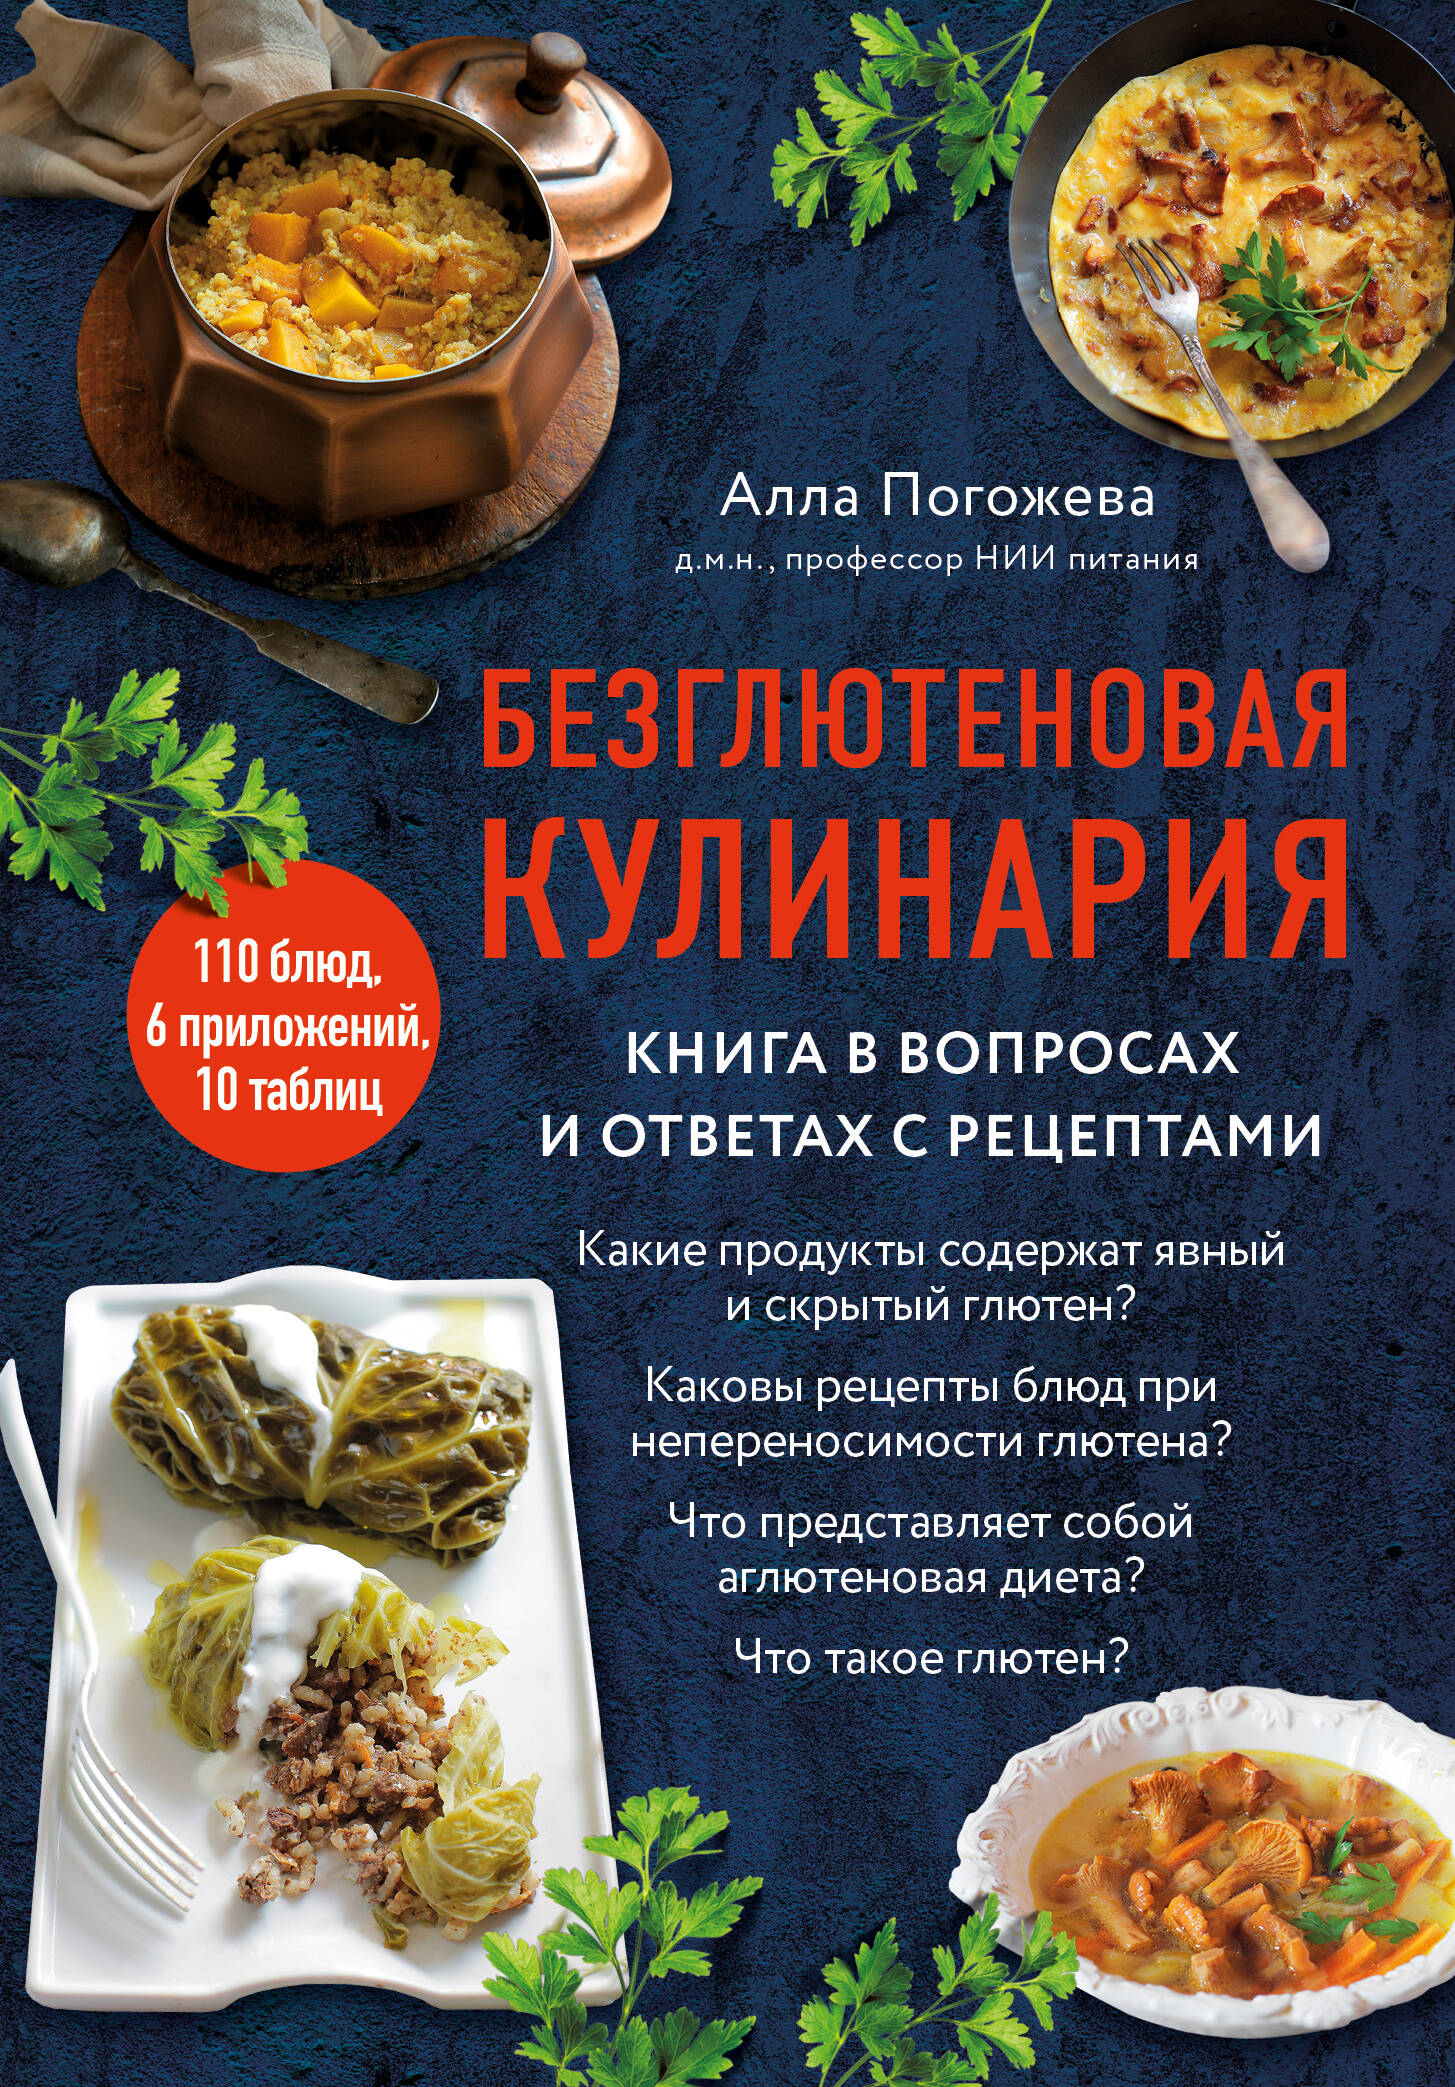 Погожева Алла Владимировна Безглютеновая кулинария: книга в вопросах и ответах с рецептами